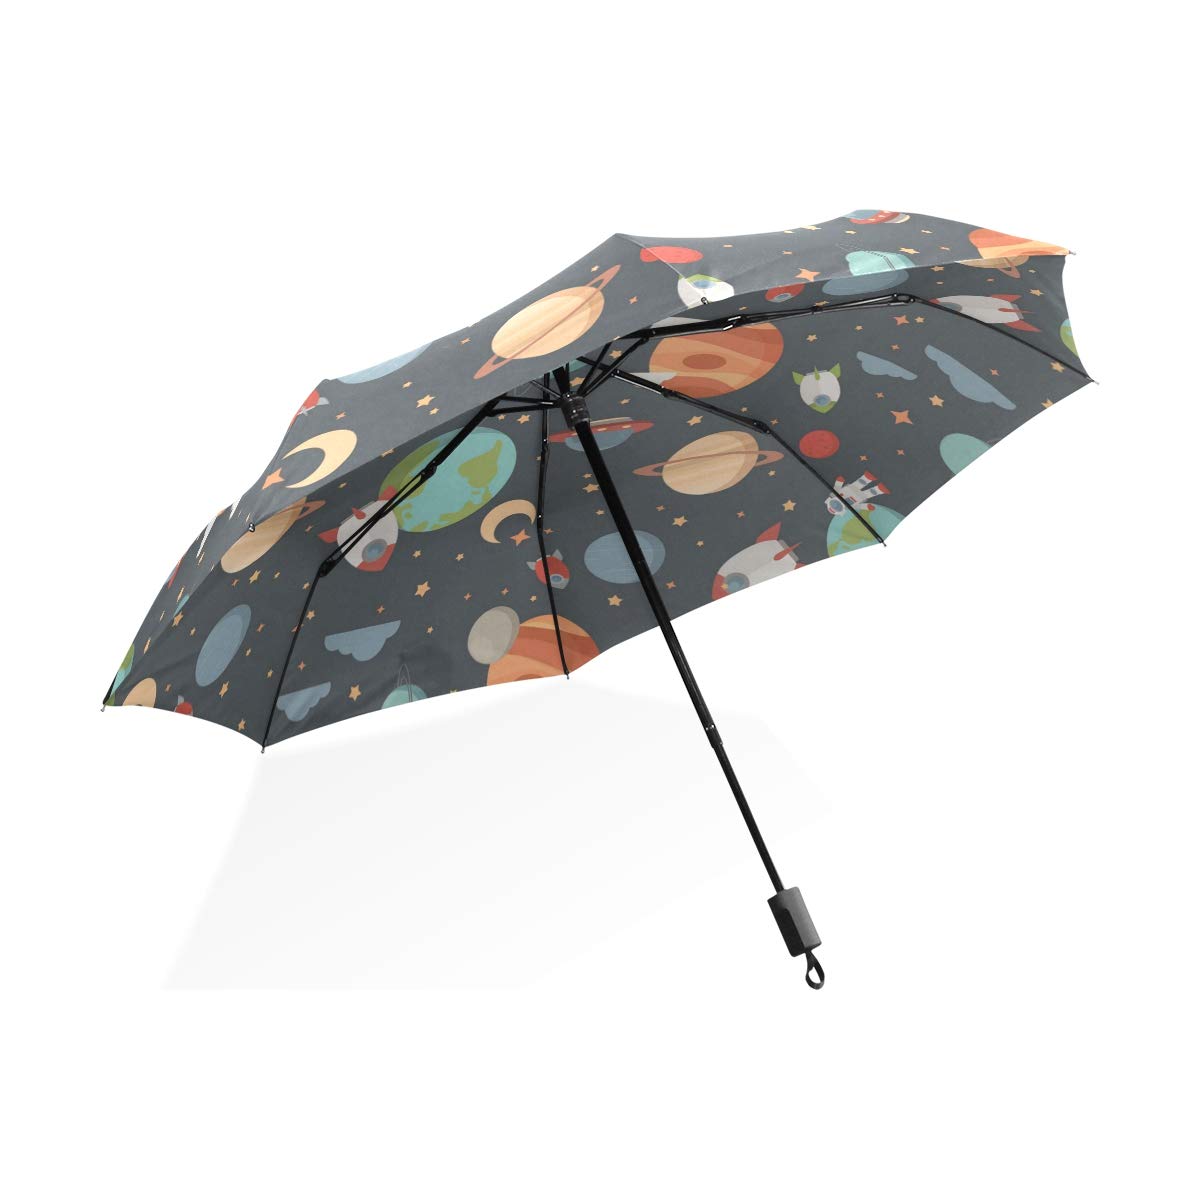 ISAOA Automatischer Reise-Regenschirm,kompakt,faltbar,Mode-niedliches stilvolles personalisiert,Winddicht Stockschirm,Ultraleicht,UV-Schutz,Regenschirm für Damen,Herren und Kinder (schwarz)